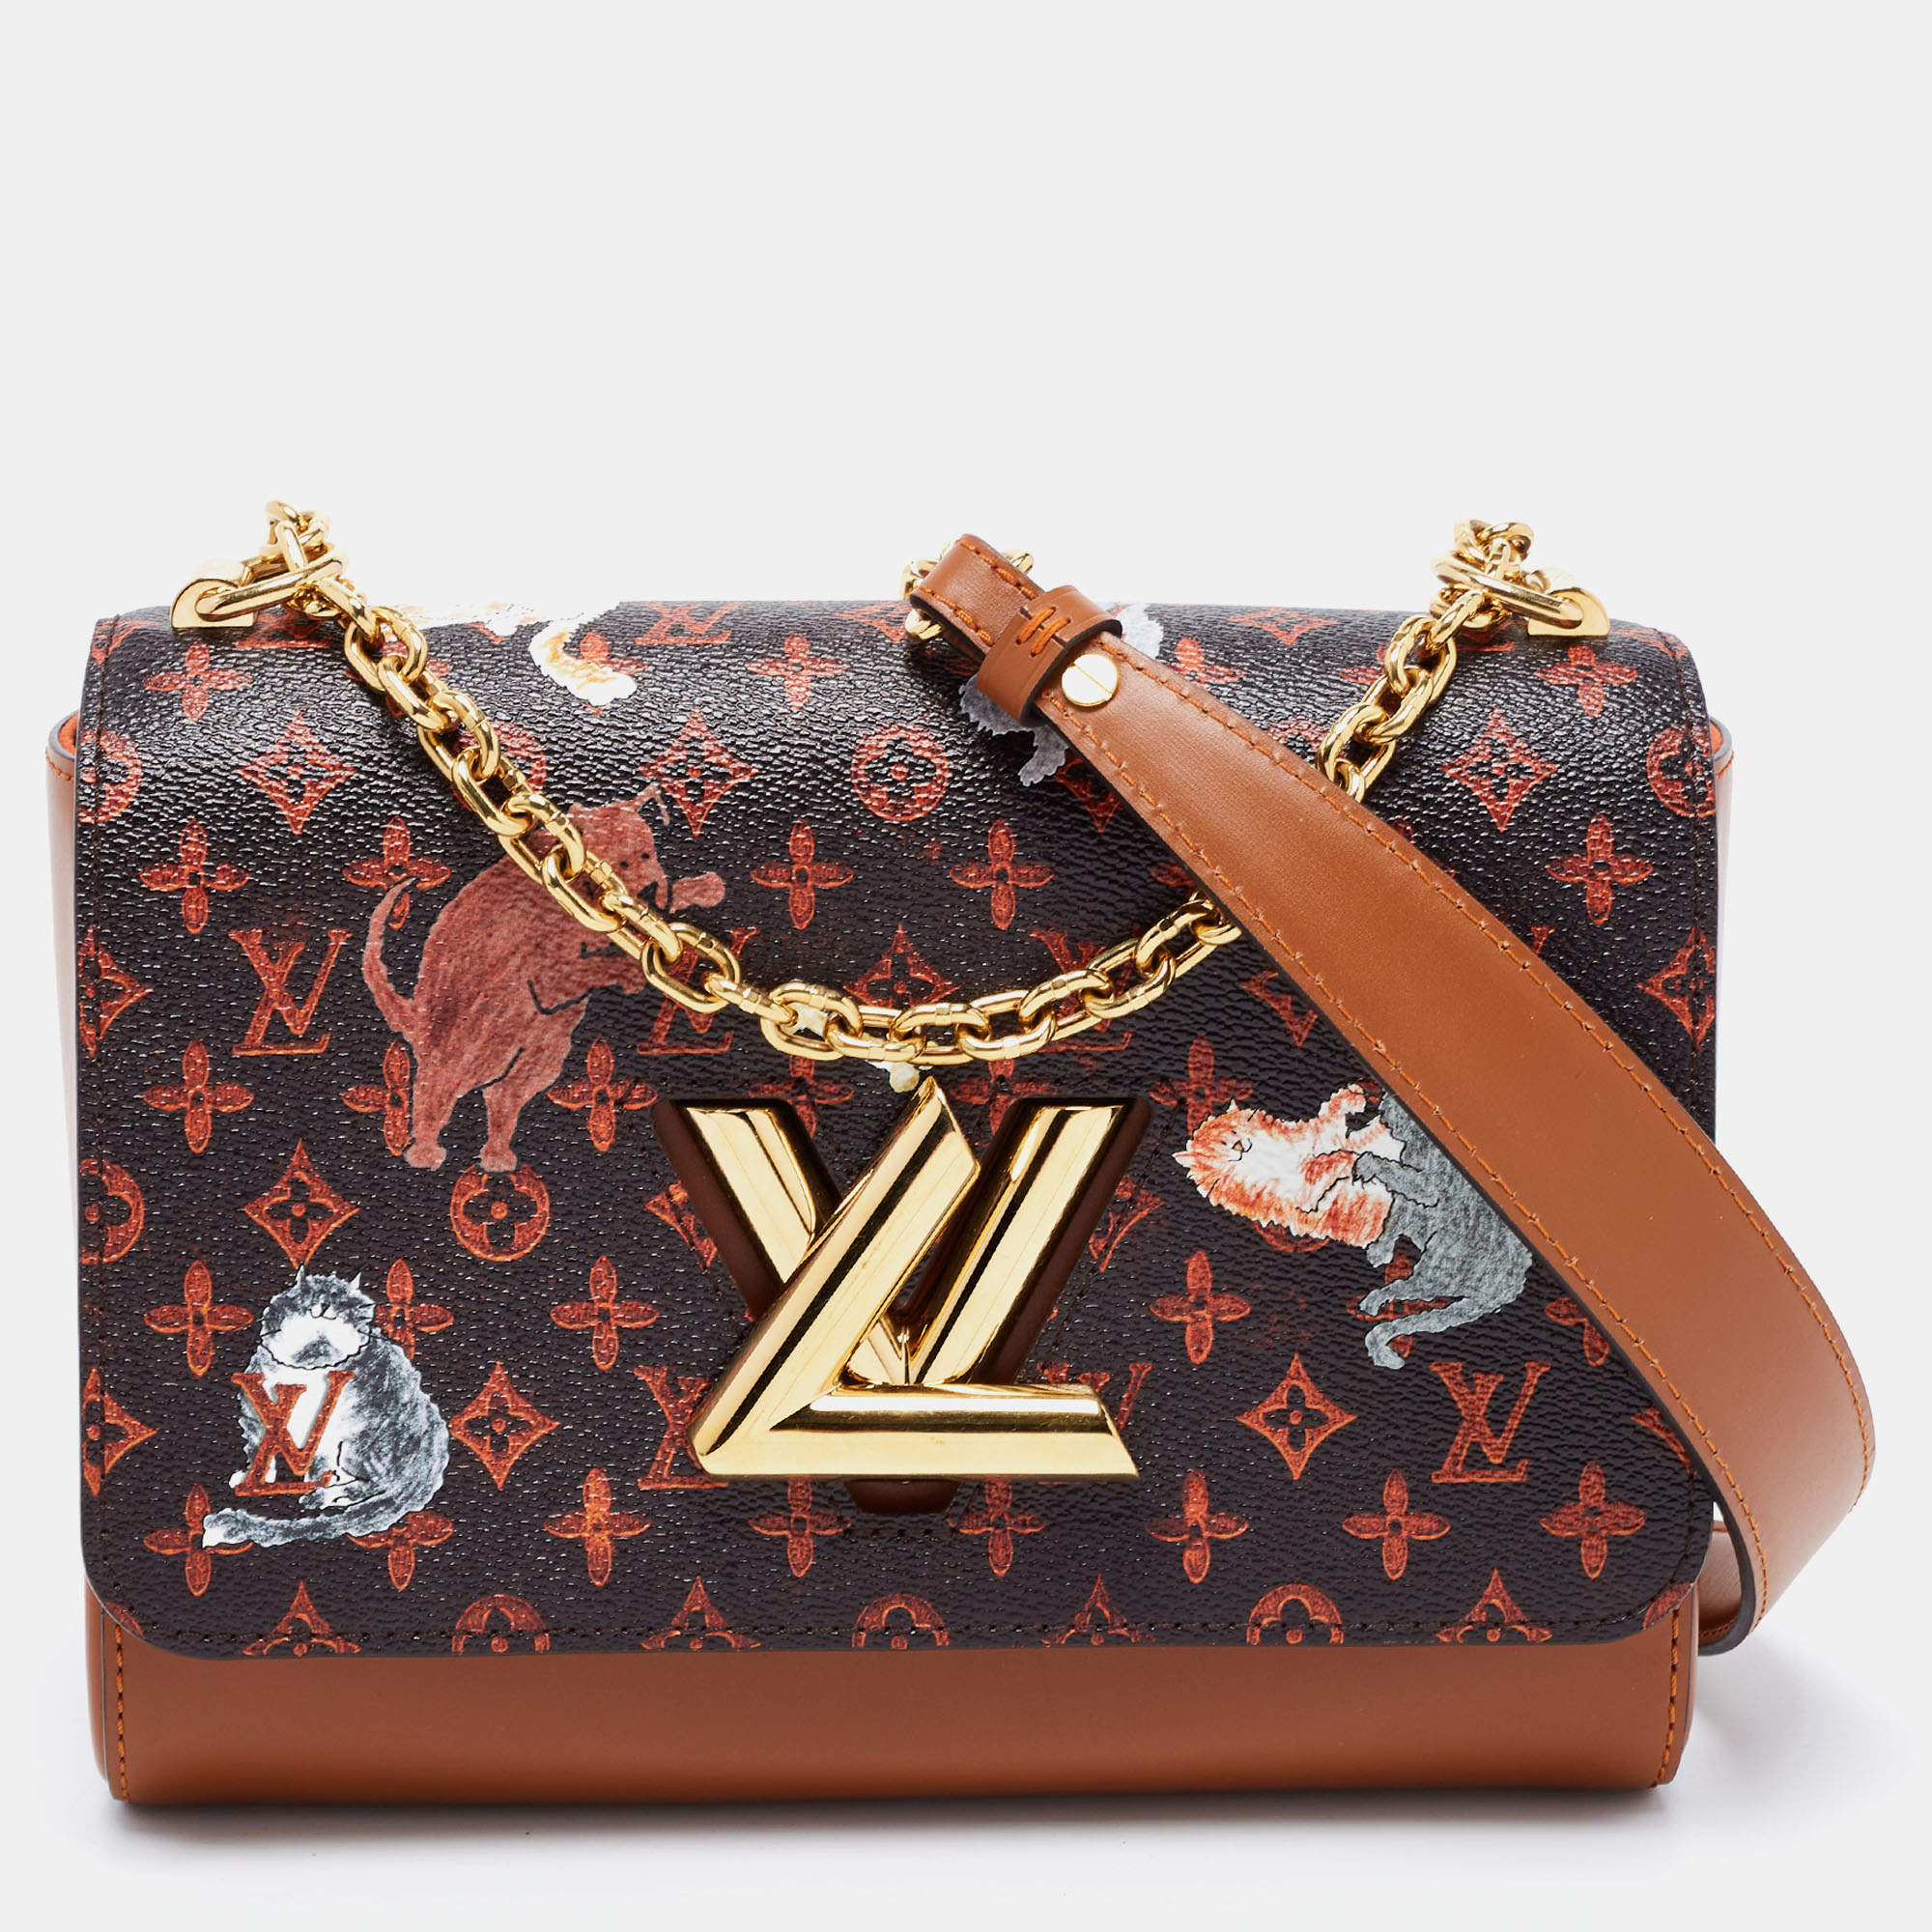 Louis Vuitton Catogram Canvas Limited Edition Grace Coddington Twist MM Bag